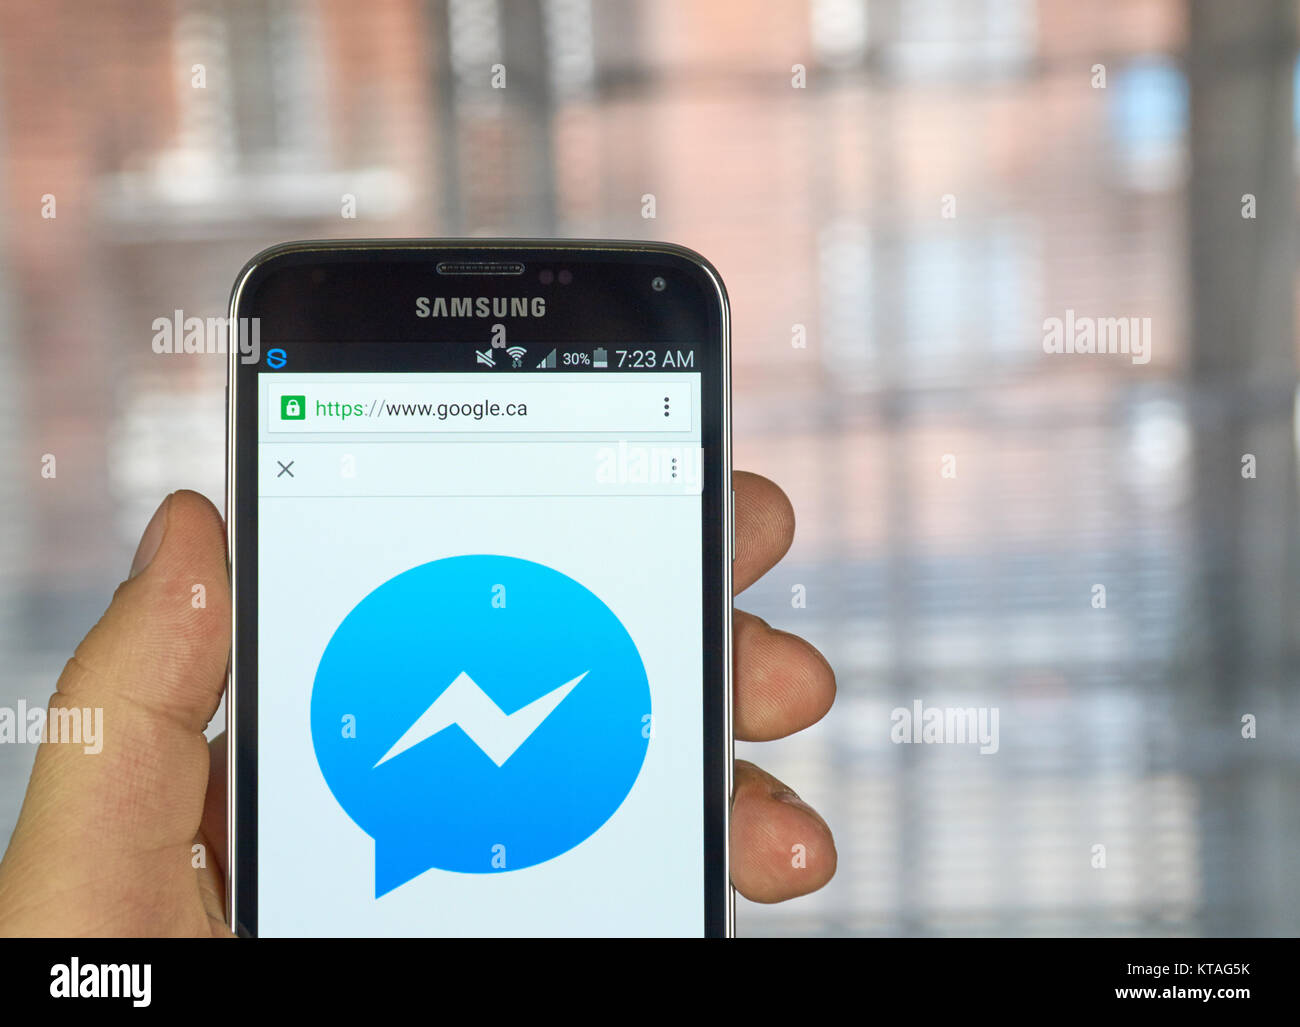 MONTREAL, Canada - 20 Marzo 2016 - Facebook Messenger sul logo Samsung S5's schermo. Facebook Messenger è un servizio di messaggistica istantanea e un software Foto Stock